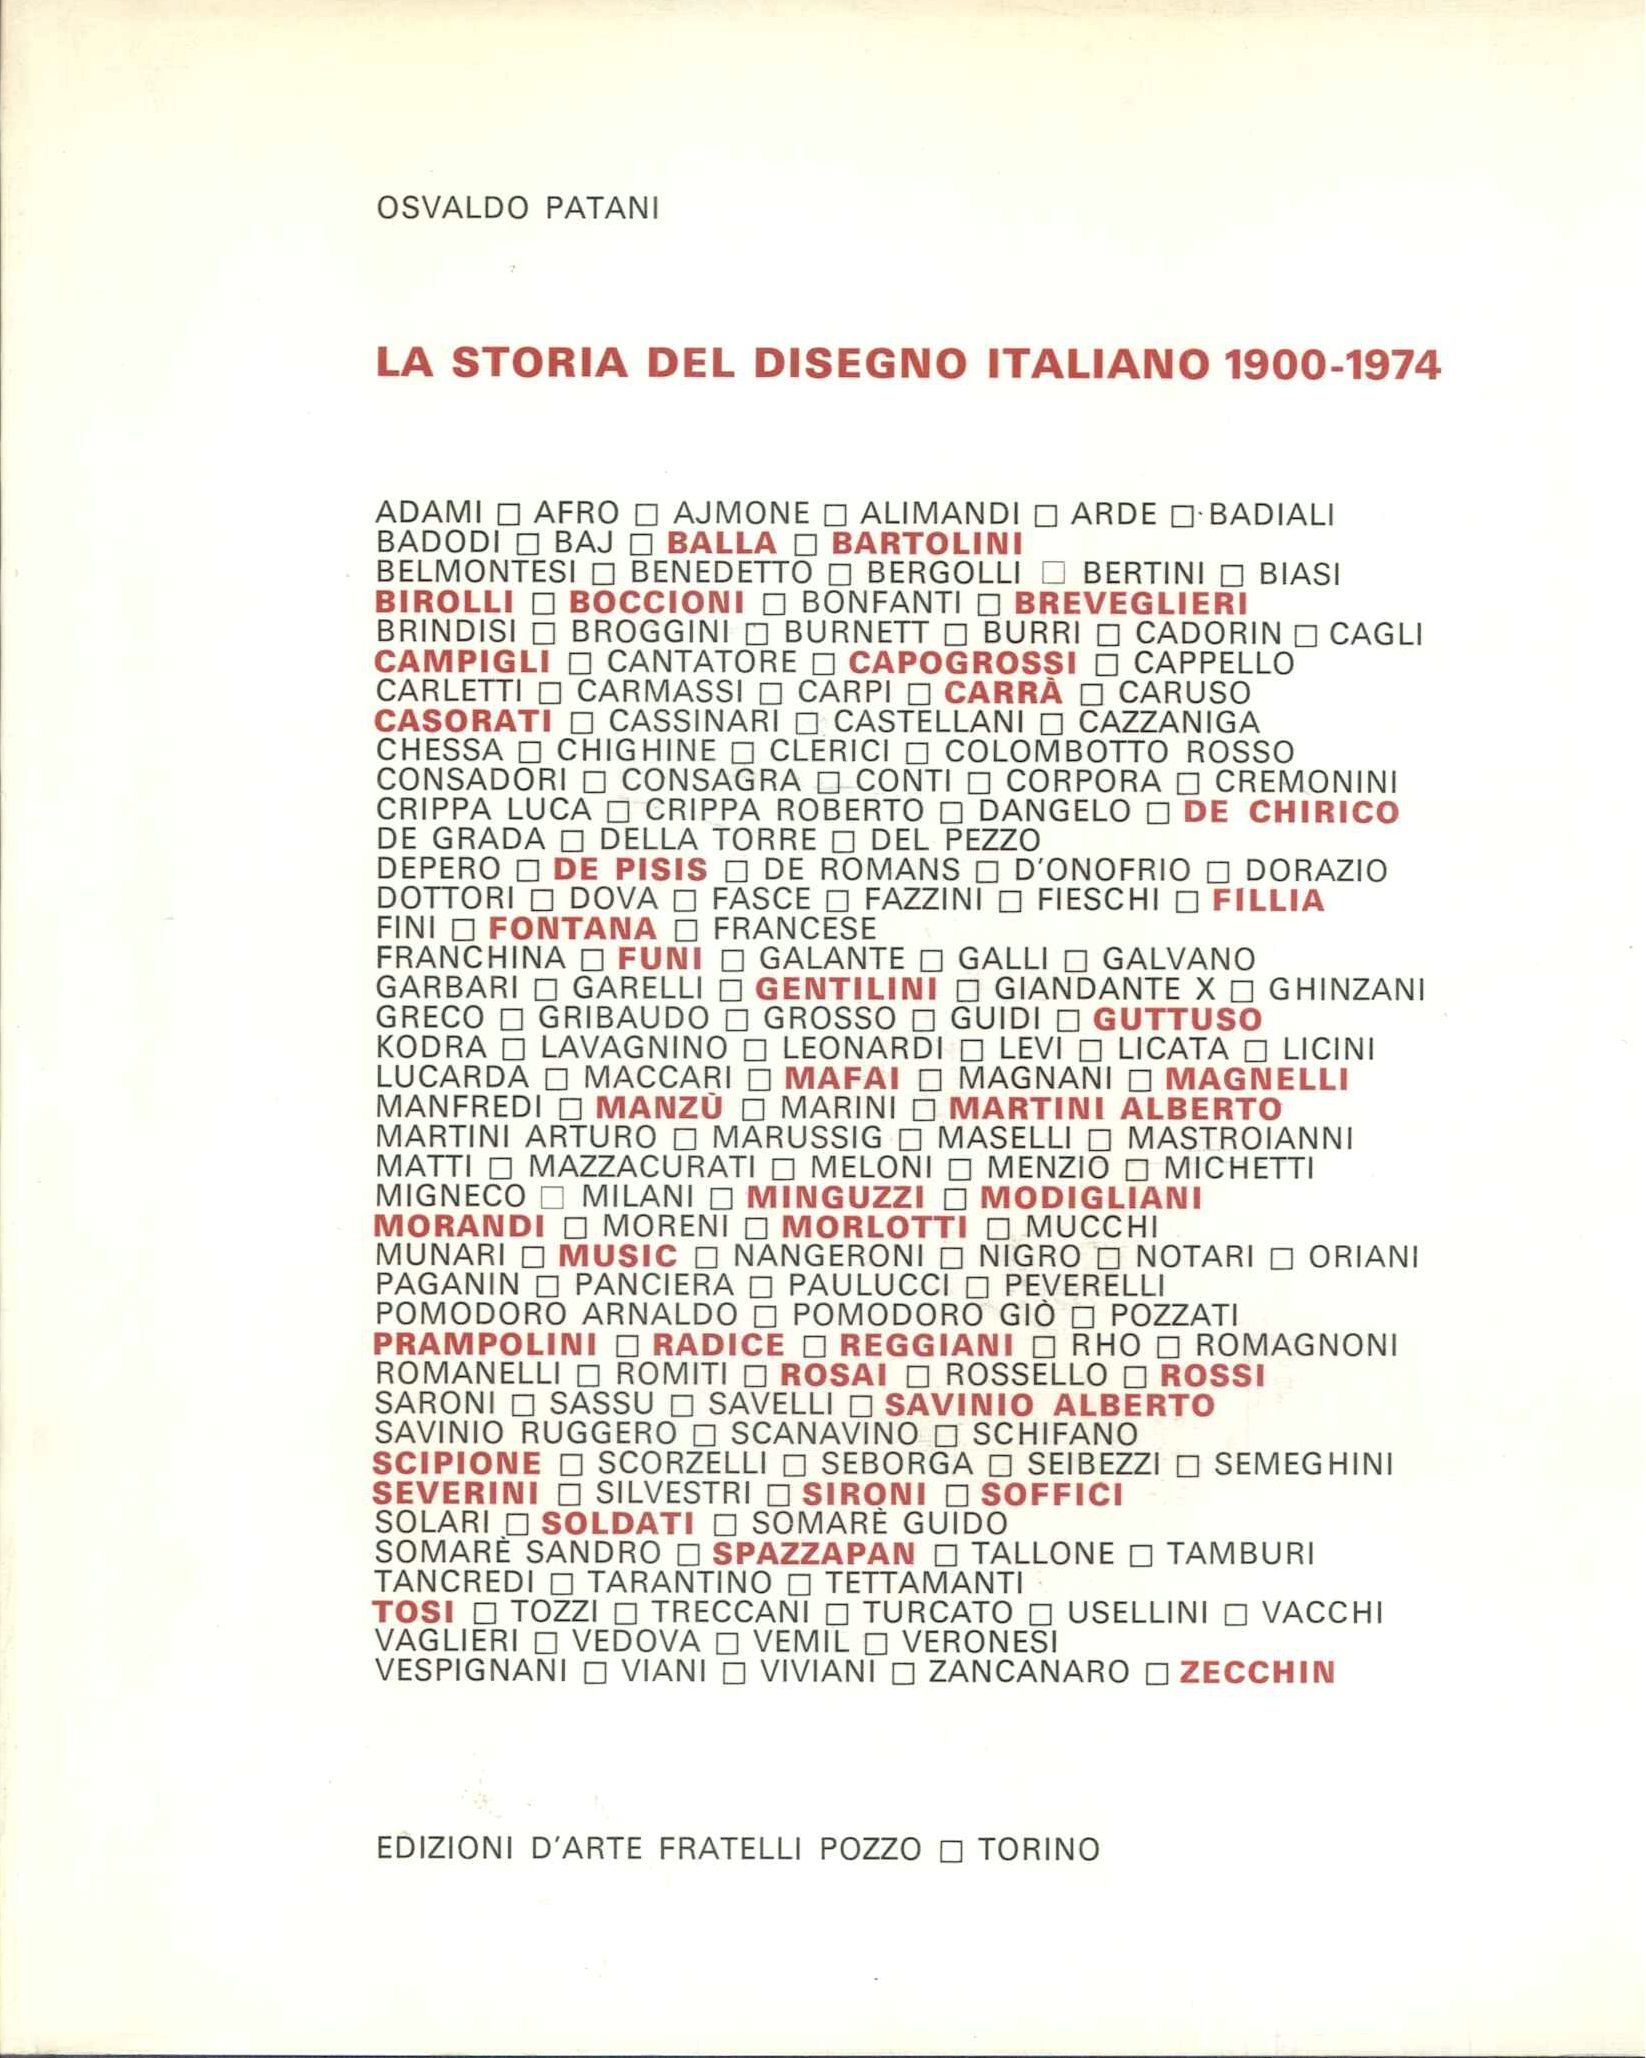 La storia del disegno italiano 1900-1974